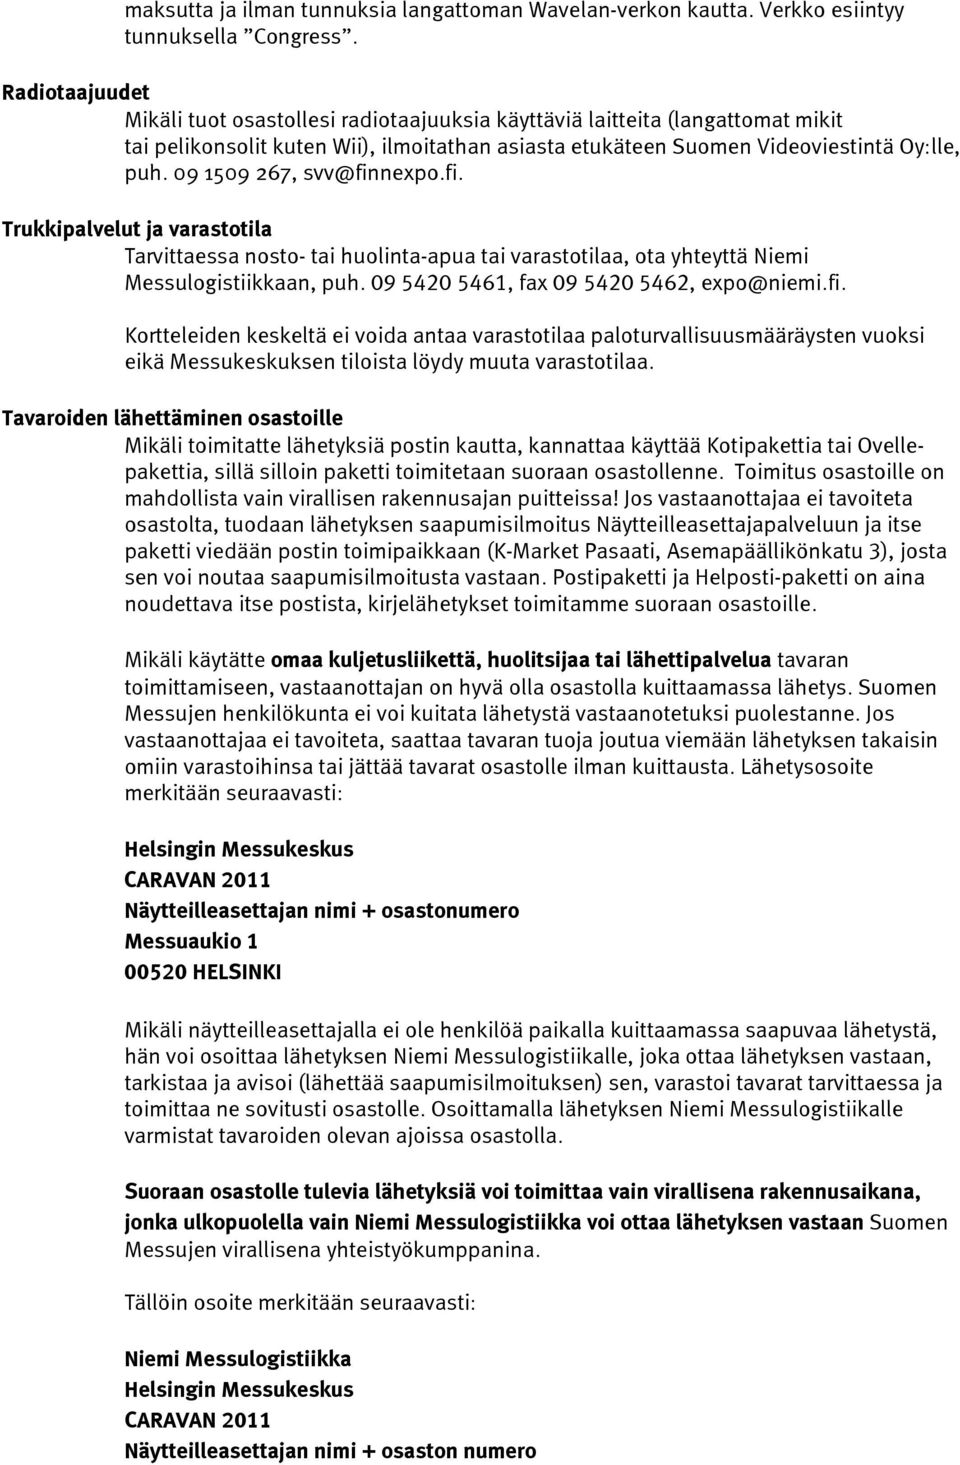 09 1509 267, svv@finnexpo.fi. Trukkipalvelut ja varastotila Tarvittaessa nosto- tai huolinta-apua tai varastotilaa, ota yhteyttä Niemi Messulogistiikkaan, puh.